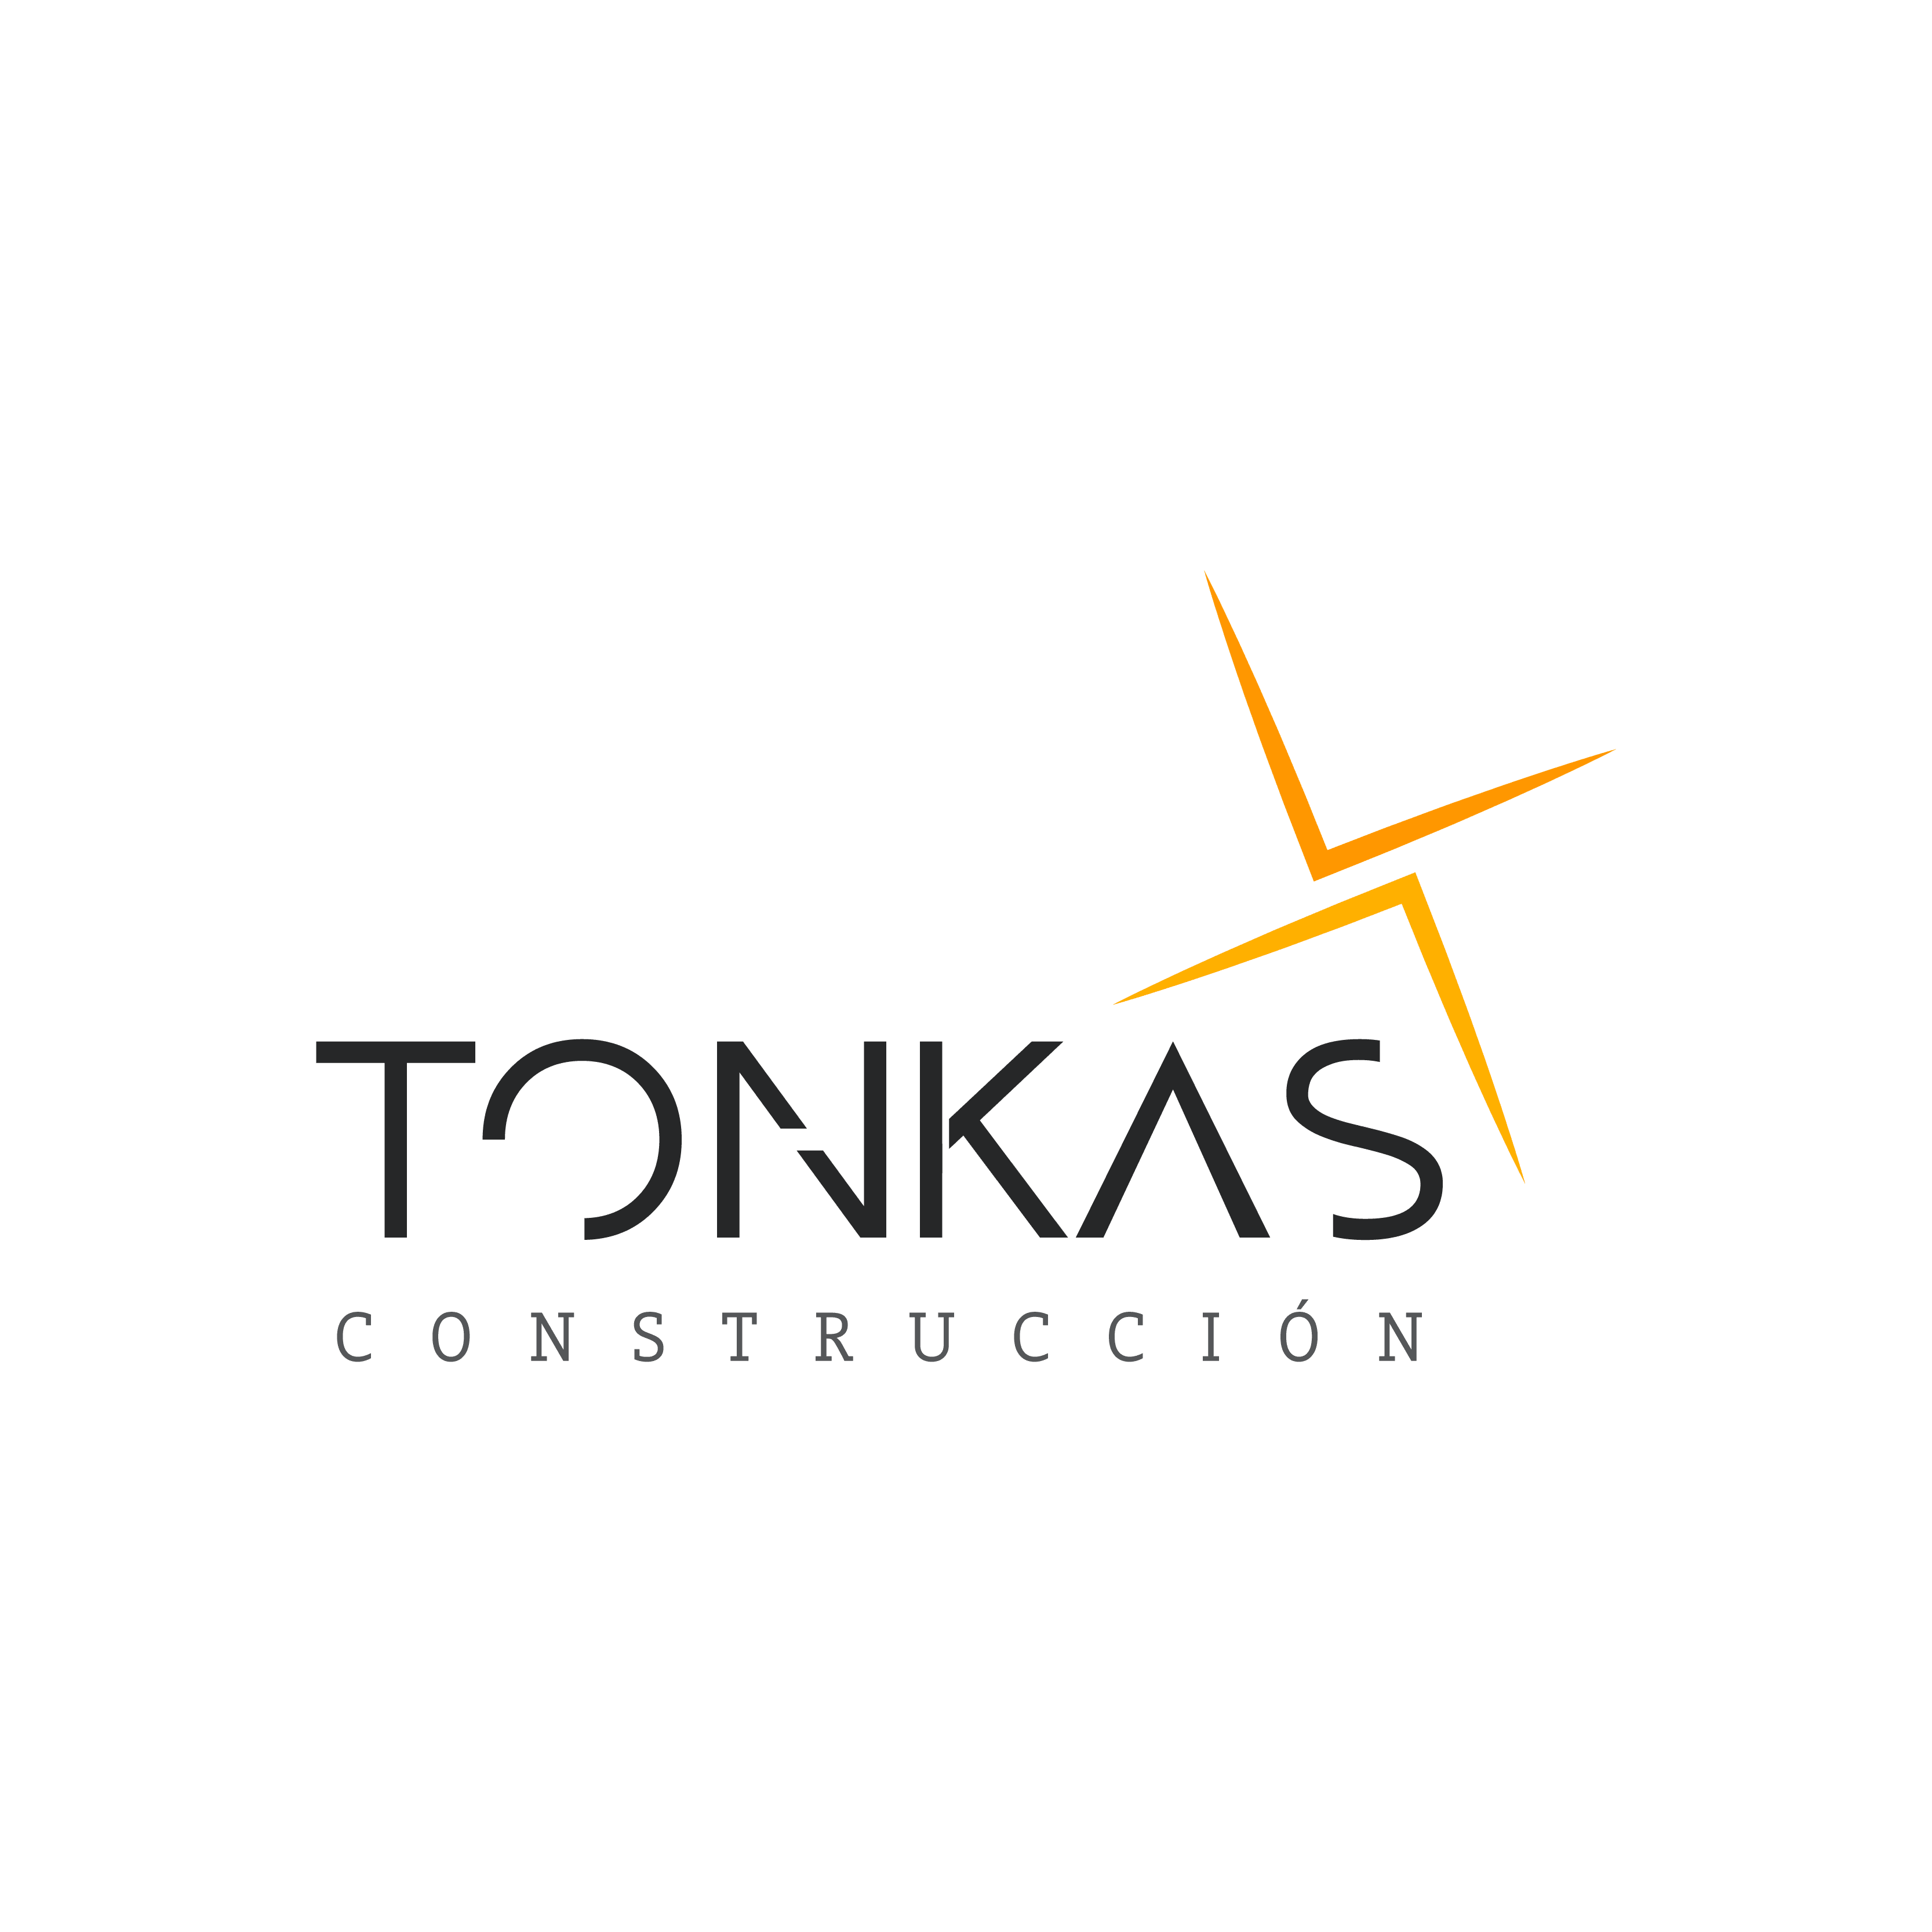 Tonkas Construccion